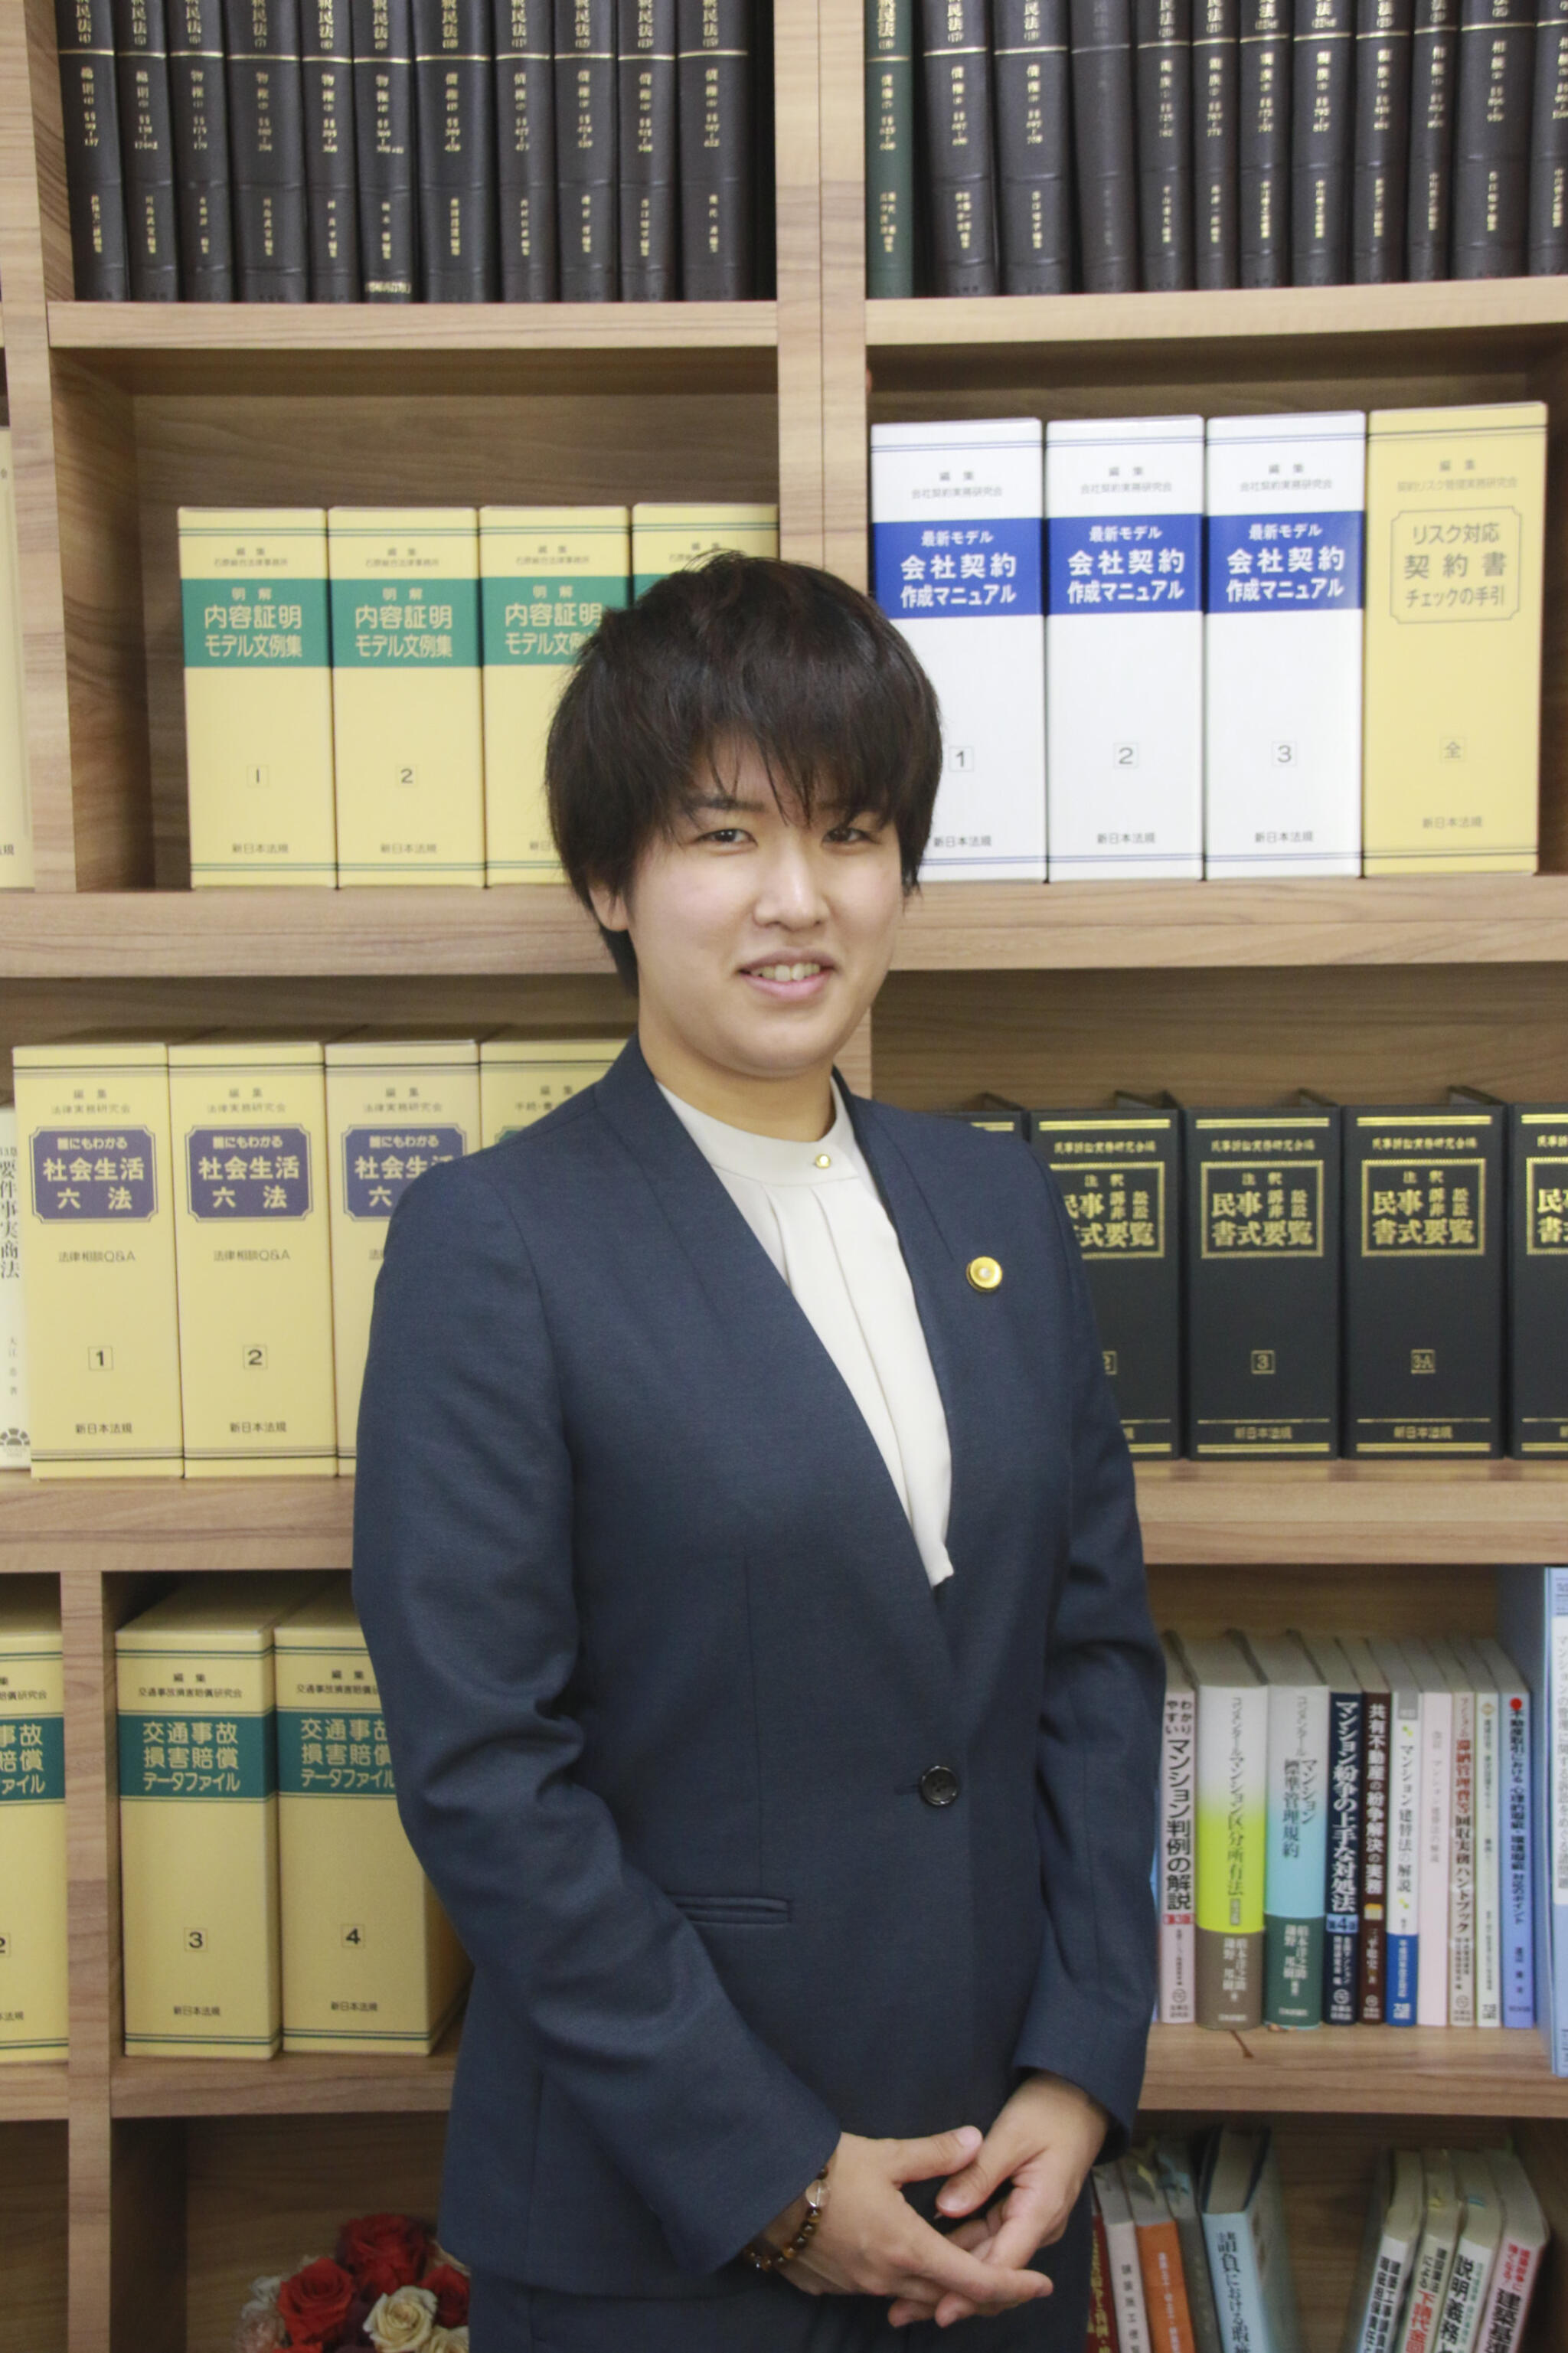 弁護士法人松本・永野法律事務所　久留米事務所からのお知らせ(花田 弘美弁護士が入所しました。)に関する写真